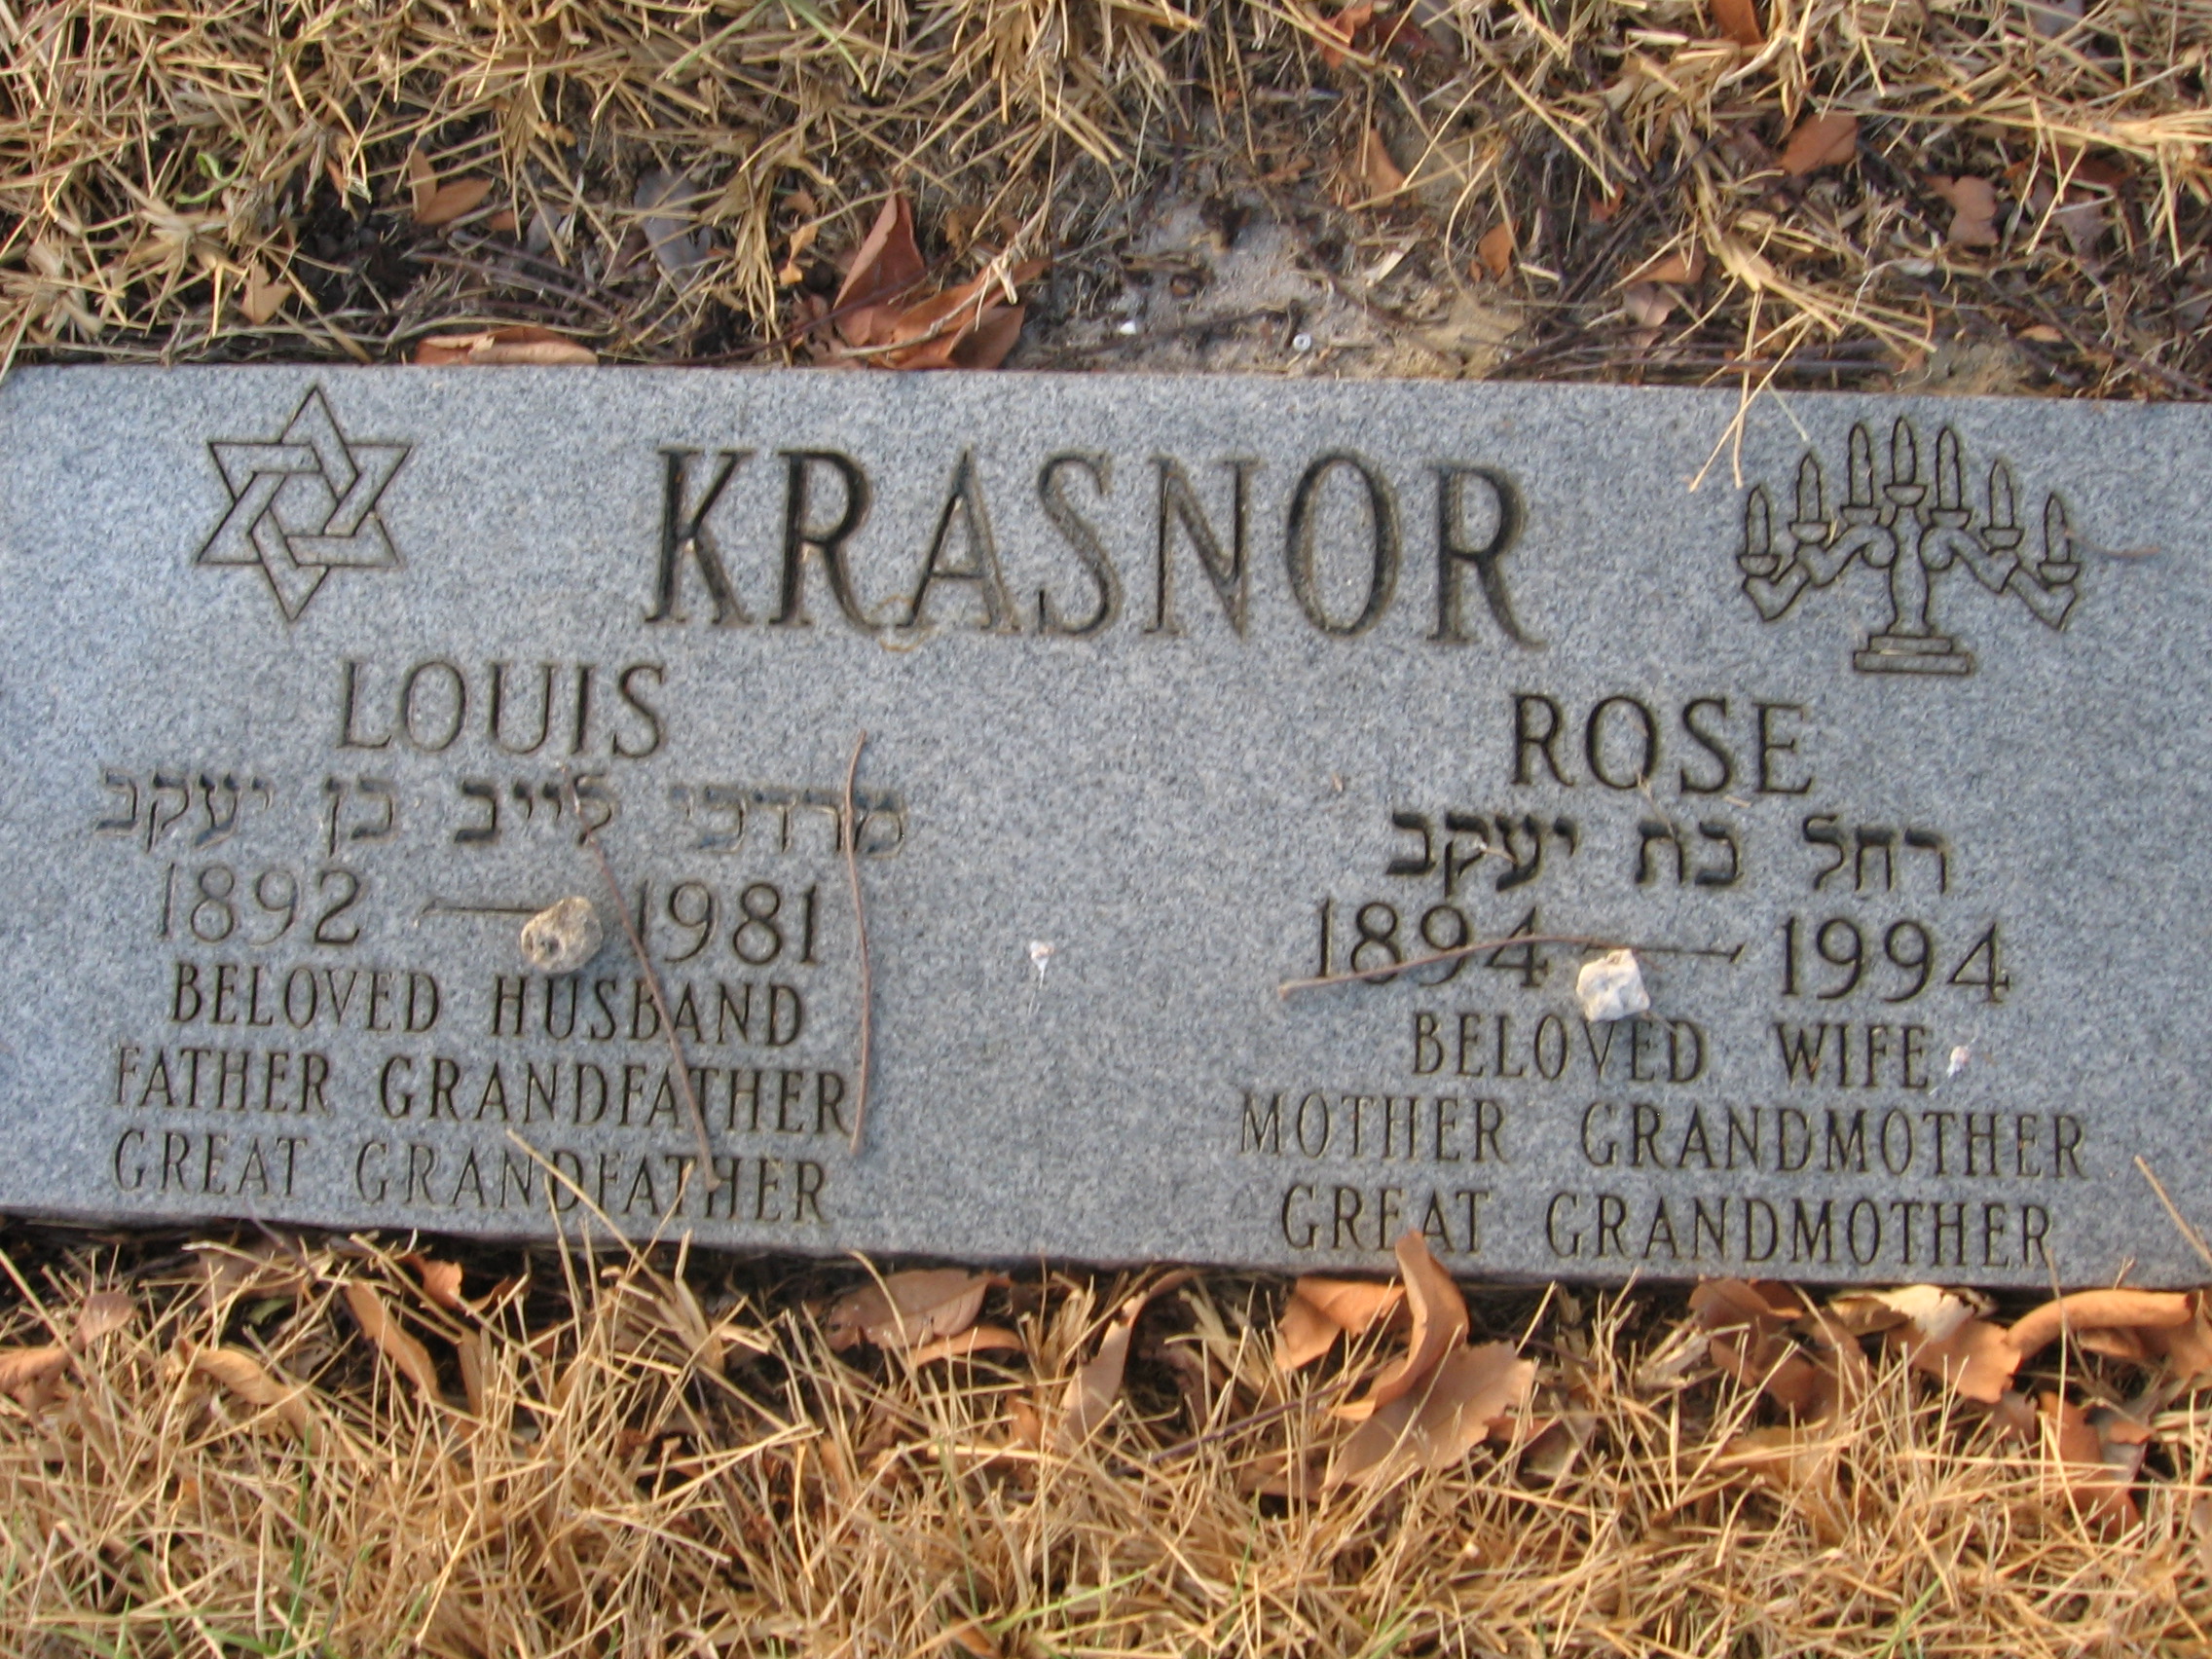 Rose Krasnor